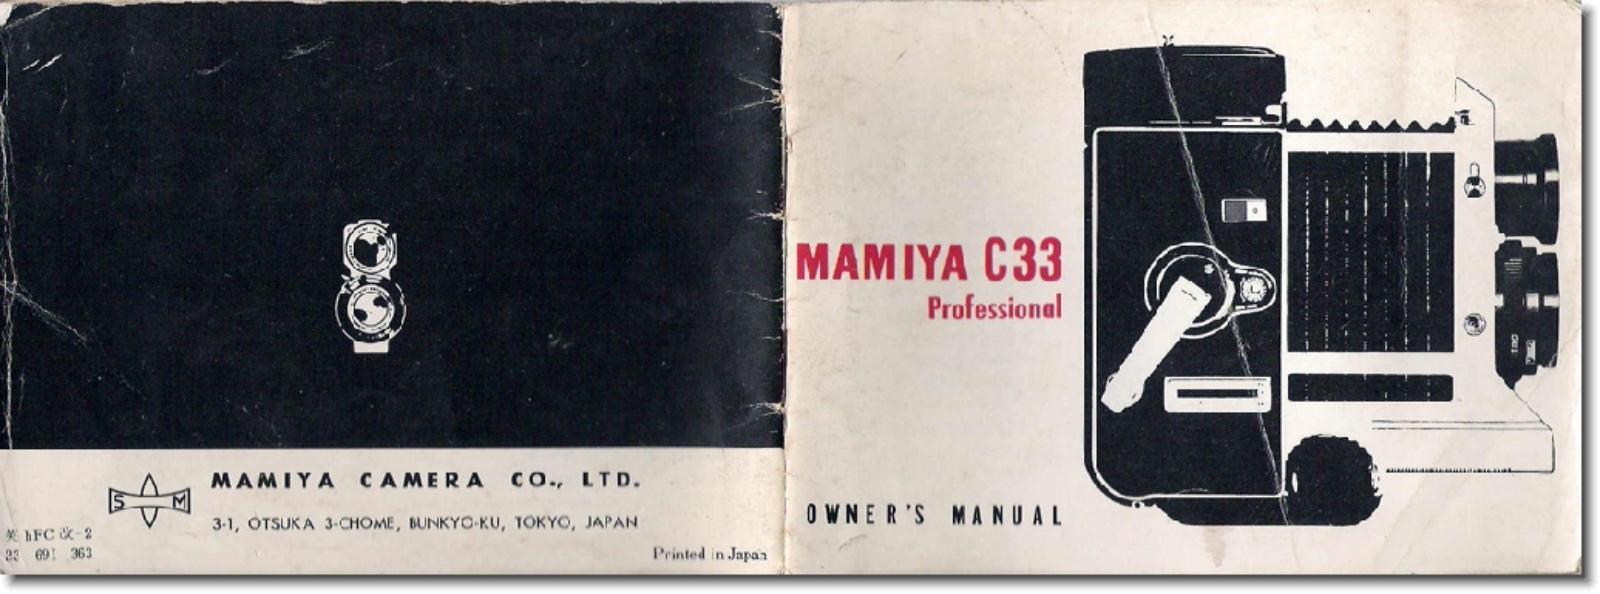 Mamiya C33 Owner's Manual